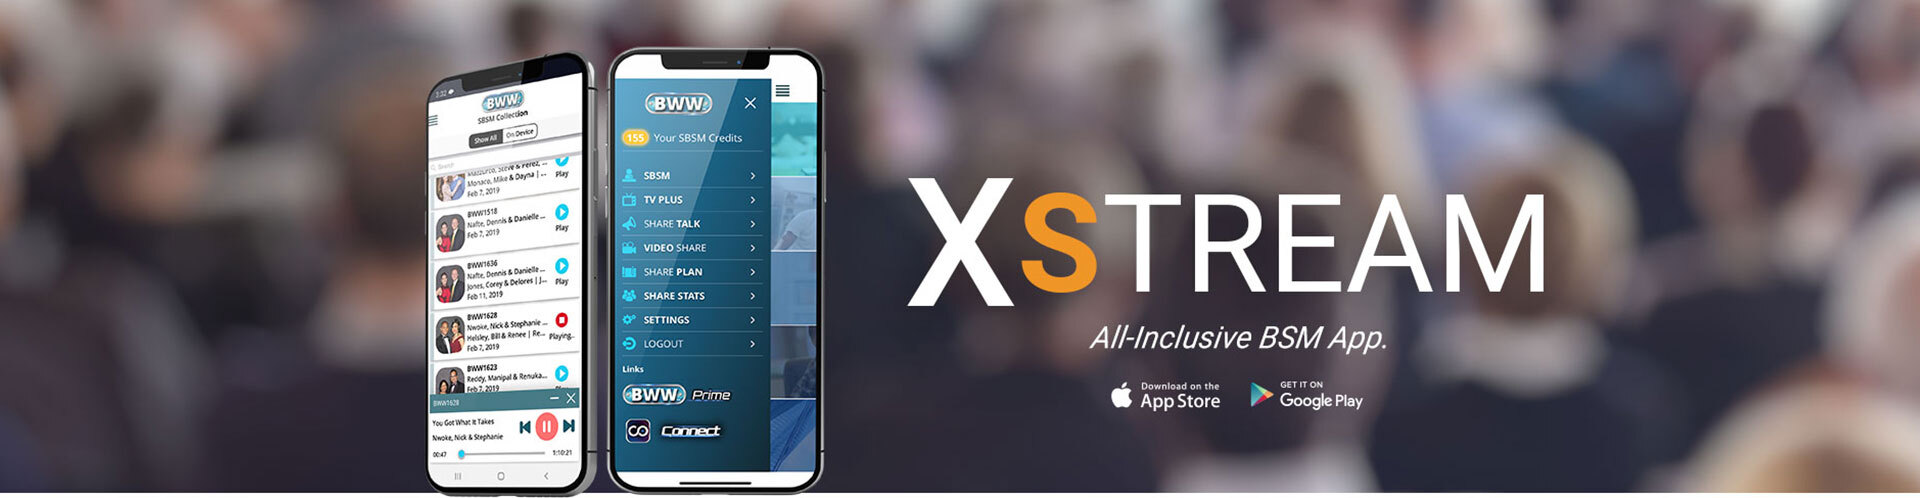 Xstream App